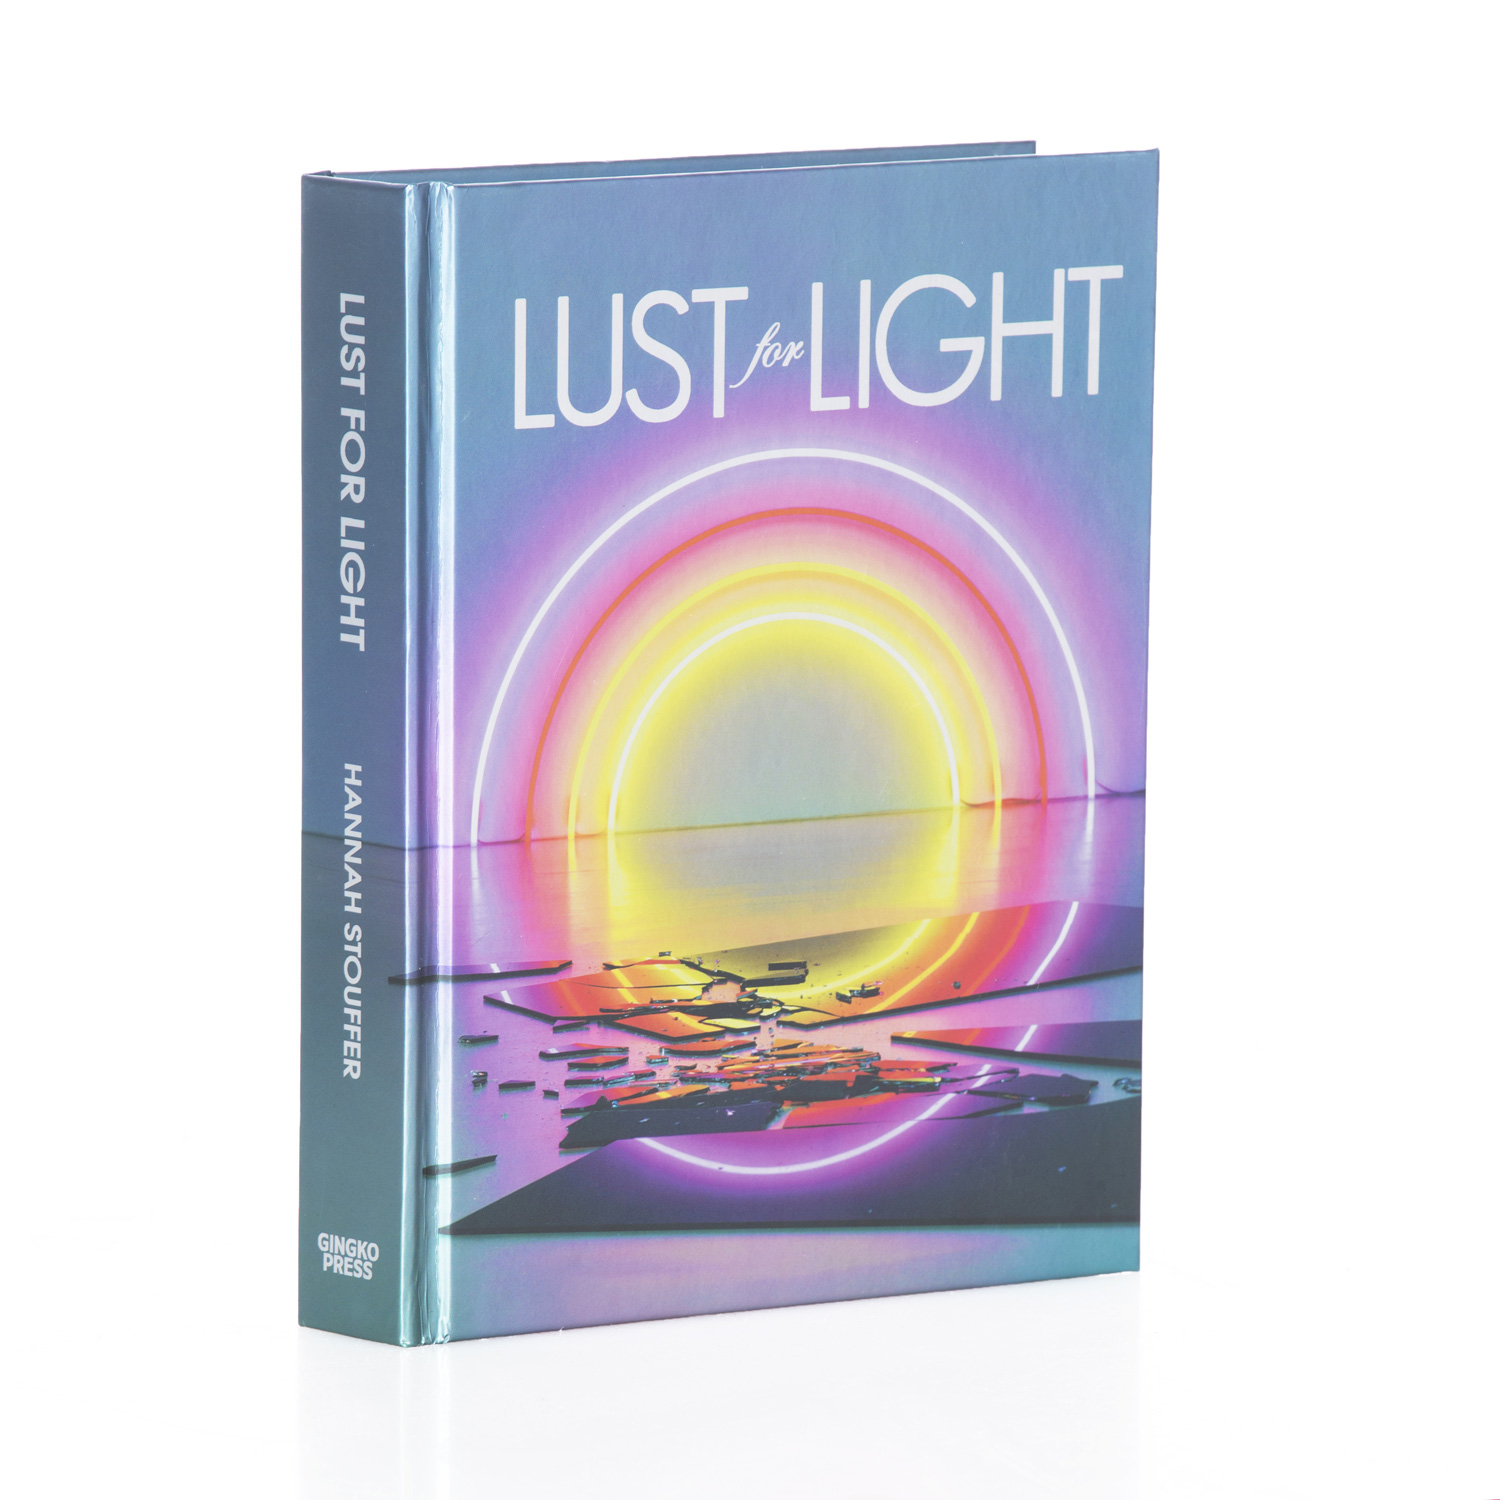 lust_for_light_book_cover.jpg